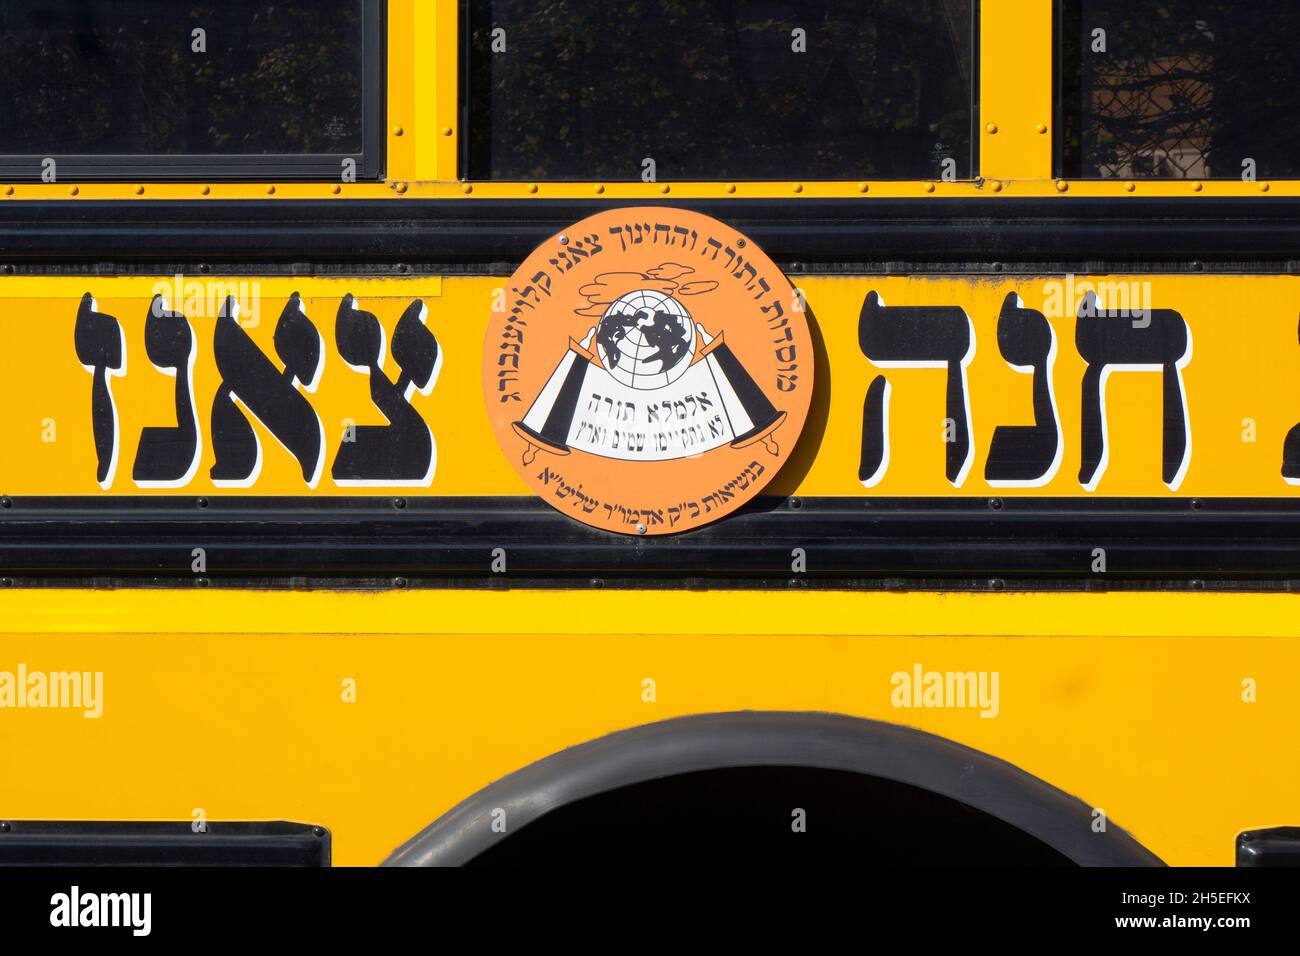 Ein Schulbus mit hebräischem Logo für die jüdische Gruppe Sanz Klausenburg mit chassidischem Namen. In Williamsburg, Brooklyn, New York City. Stockfoto